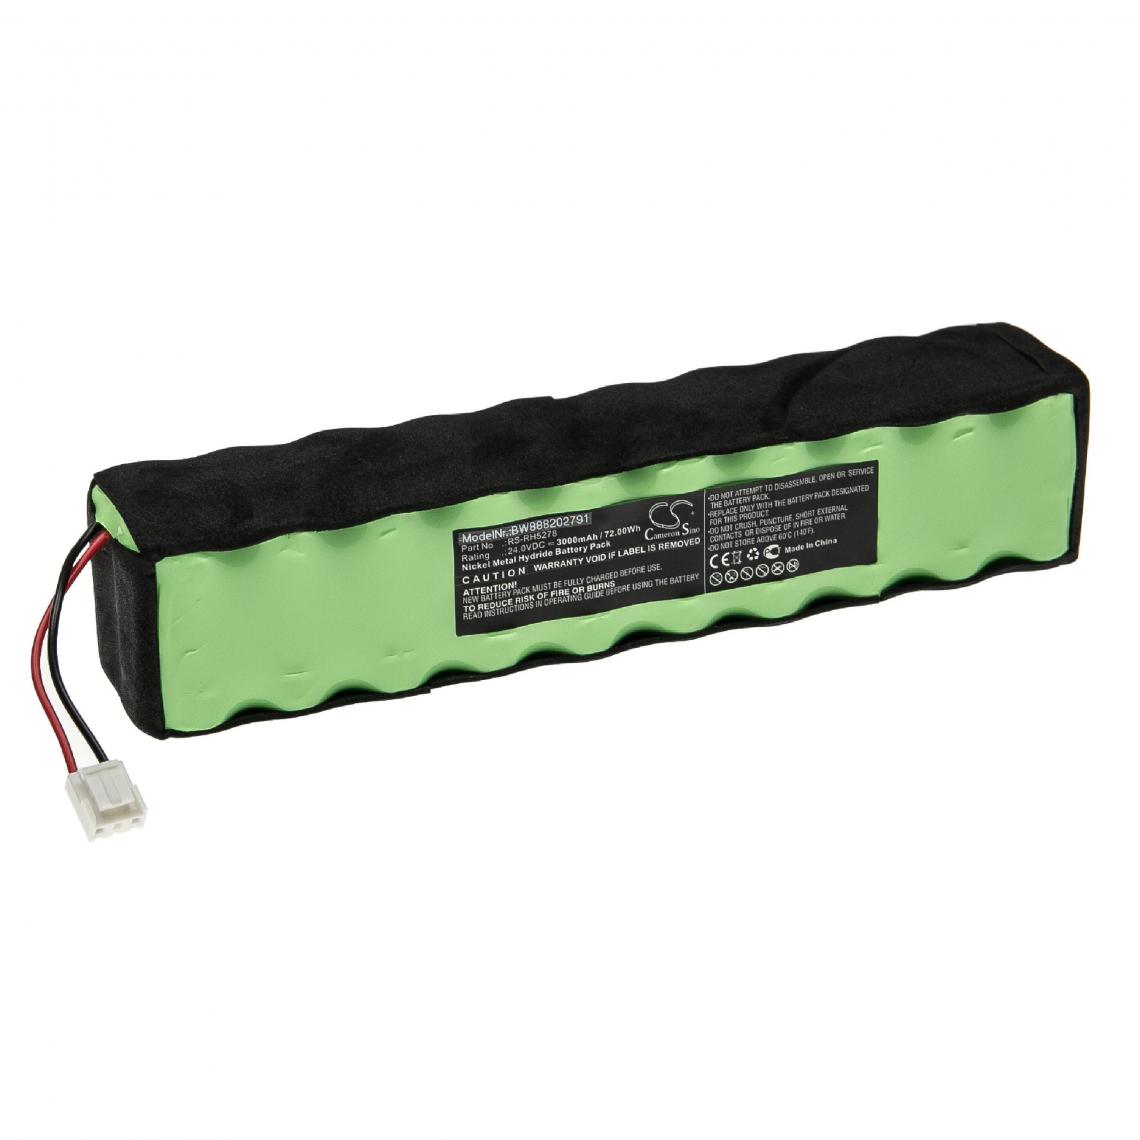 Vhbw - vhbw Batterie compatible avec Rowenta RH877501/2D1, RH877501/8M0, RH877501/HM0 aspirateur, robot électroménager (3000mAh, 24V, NiMH) - Accessoire entretien des sols